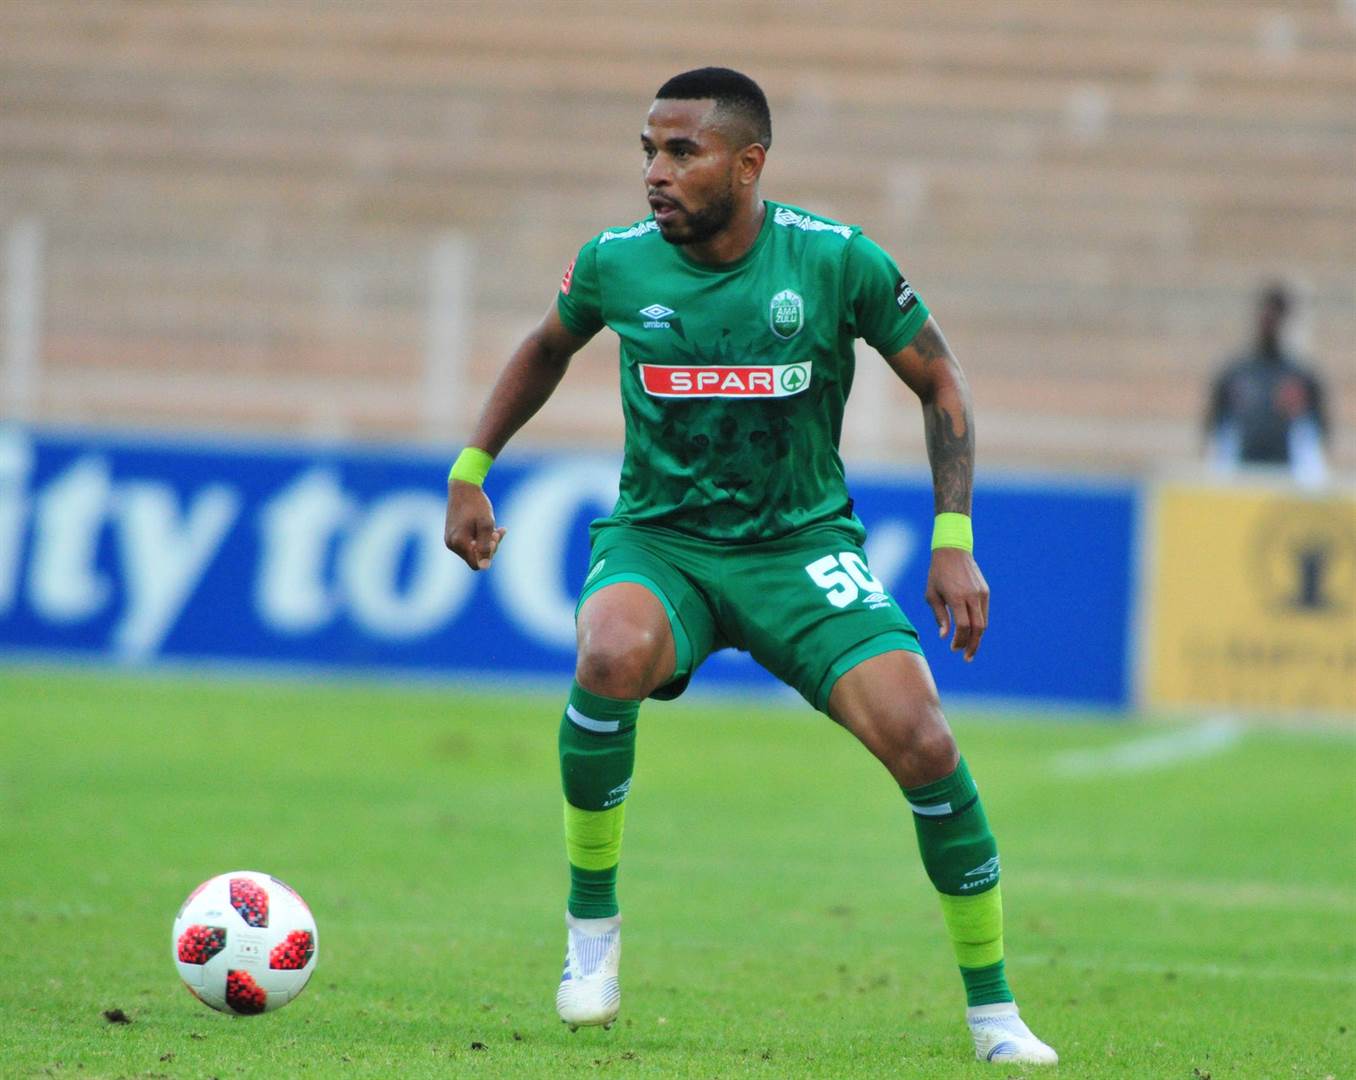 Nhlanhla Vilakazi (33) - midfielder